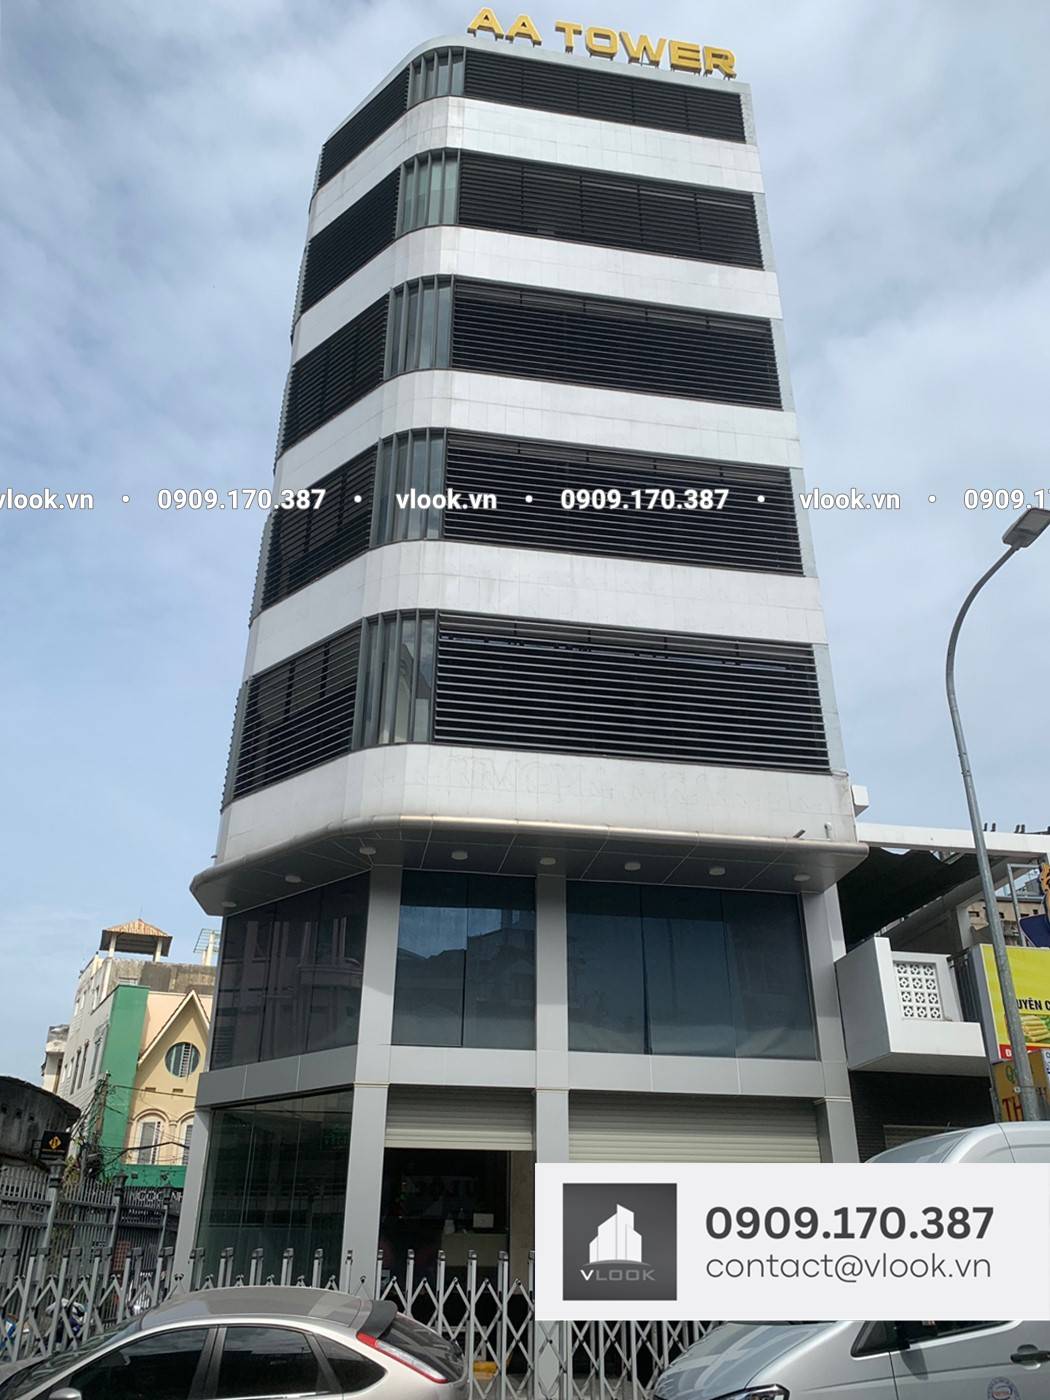 Cao ốc văn phòng cho thuê tòa nhà AA Tower, 103A Nguyễn Văn Đậu, Quận Bình Thạnh, TPHCM - vlook.vn - 0909170387